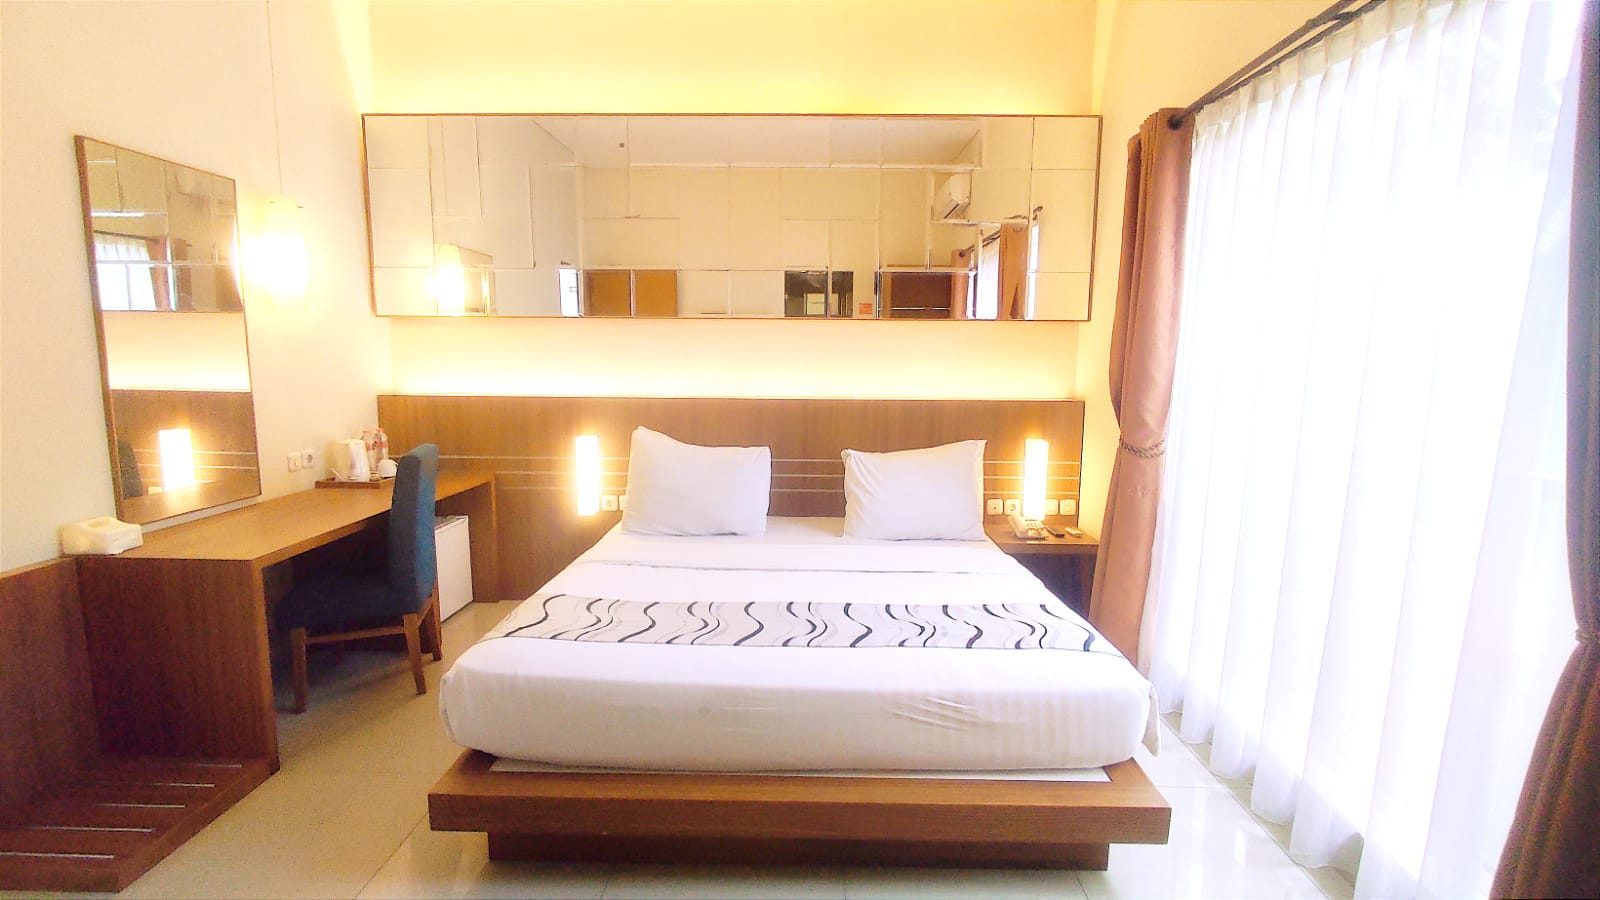 Bedroom 3, GRAND GUCI BY PALMA HOTELS (tutup sementara), Bandung